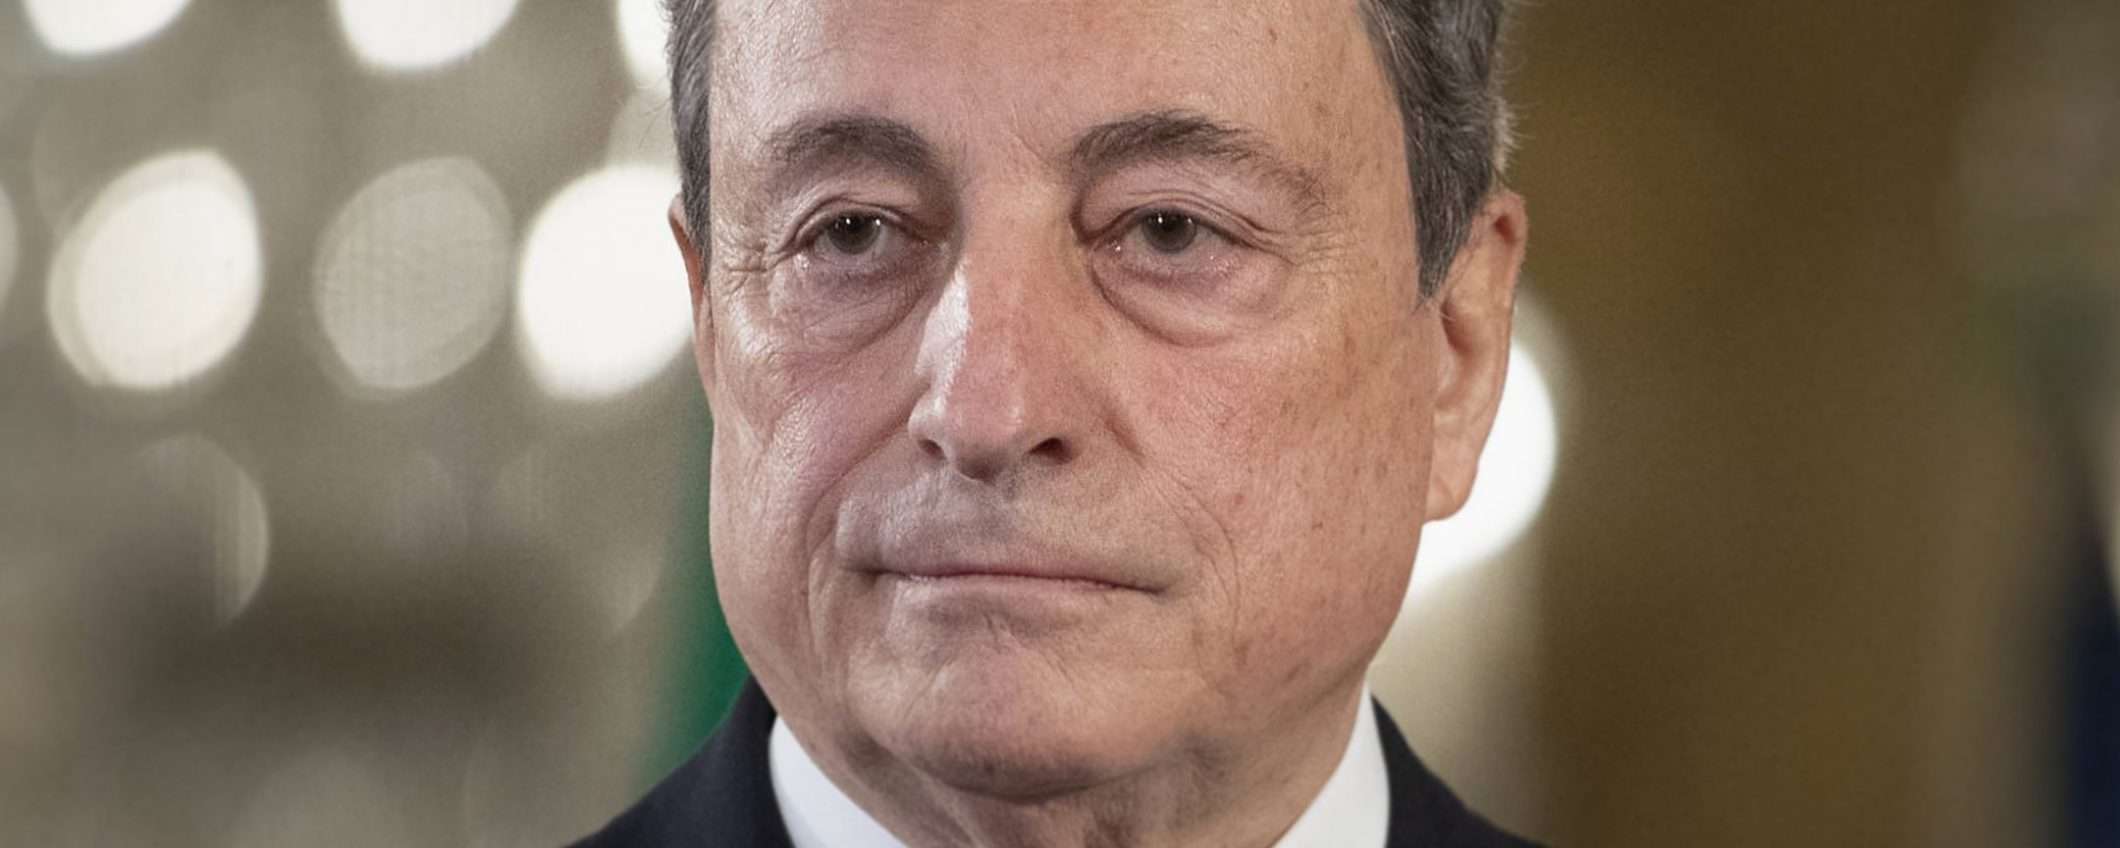 Il piano Draghi: Colao, Brunetta, Giorgetti, Cingolani